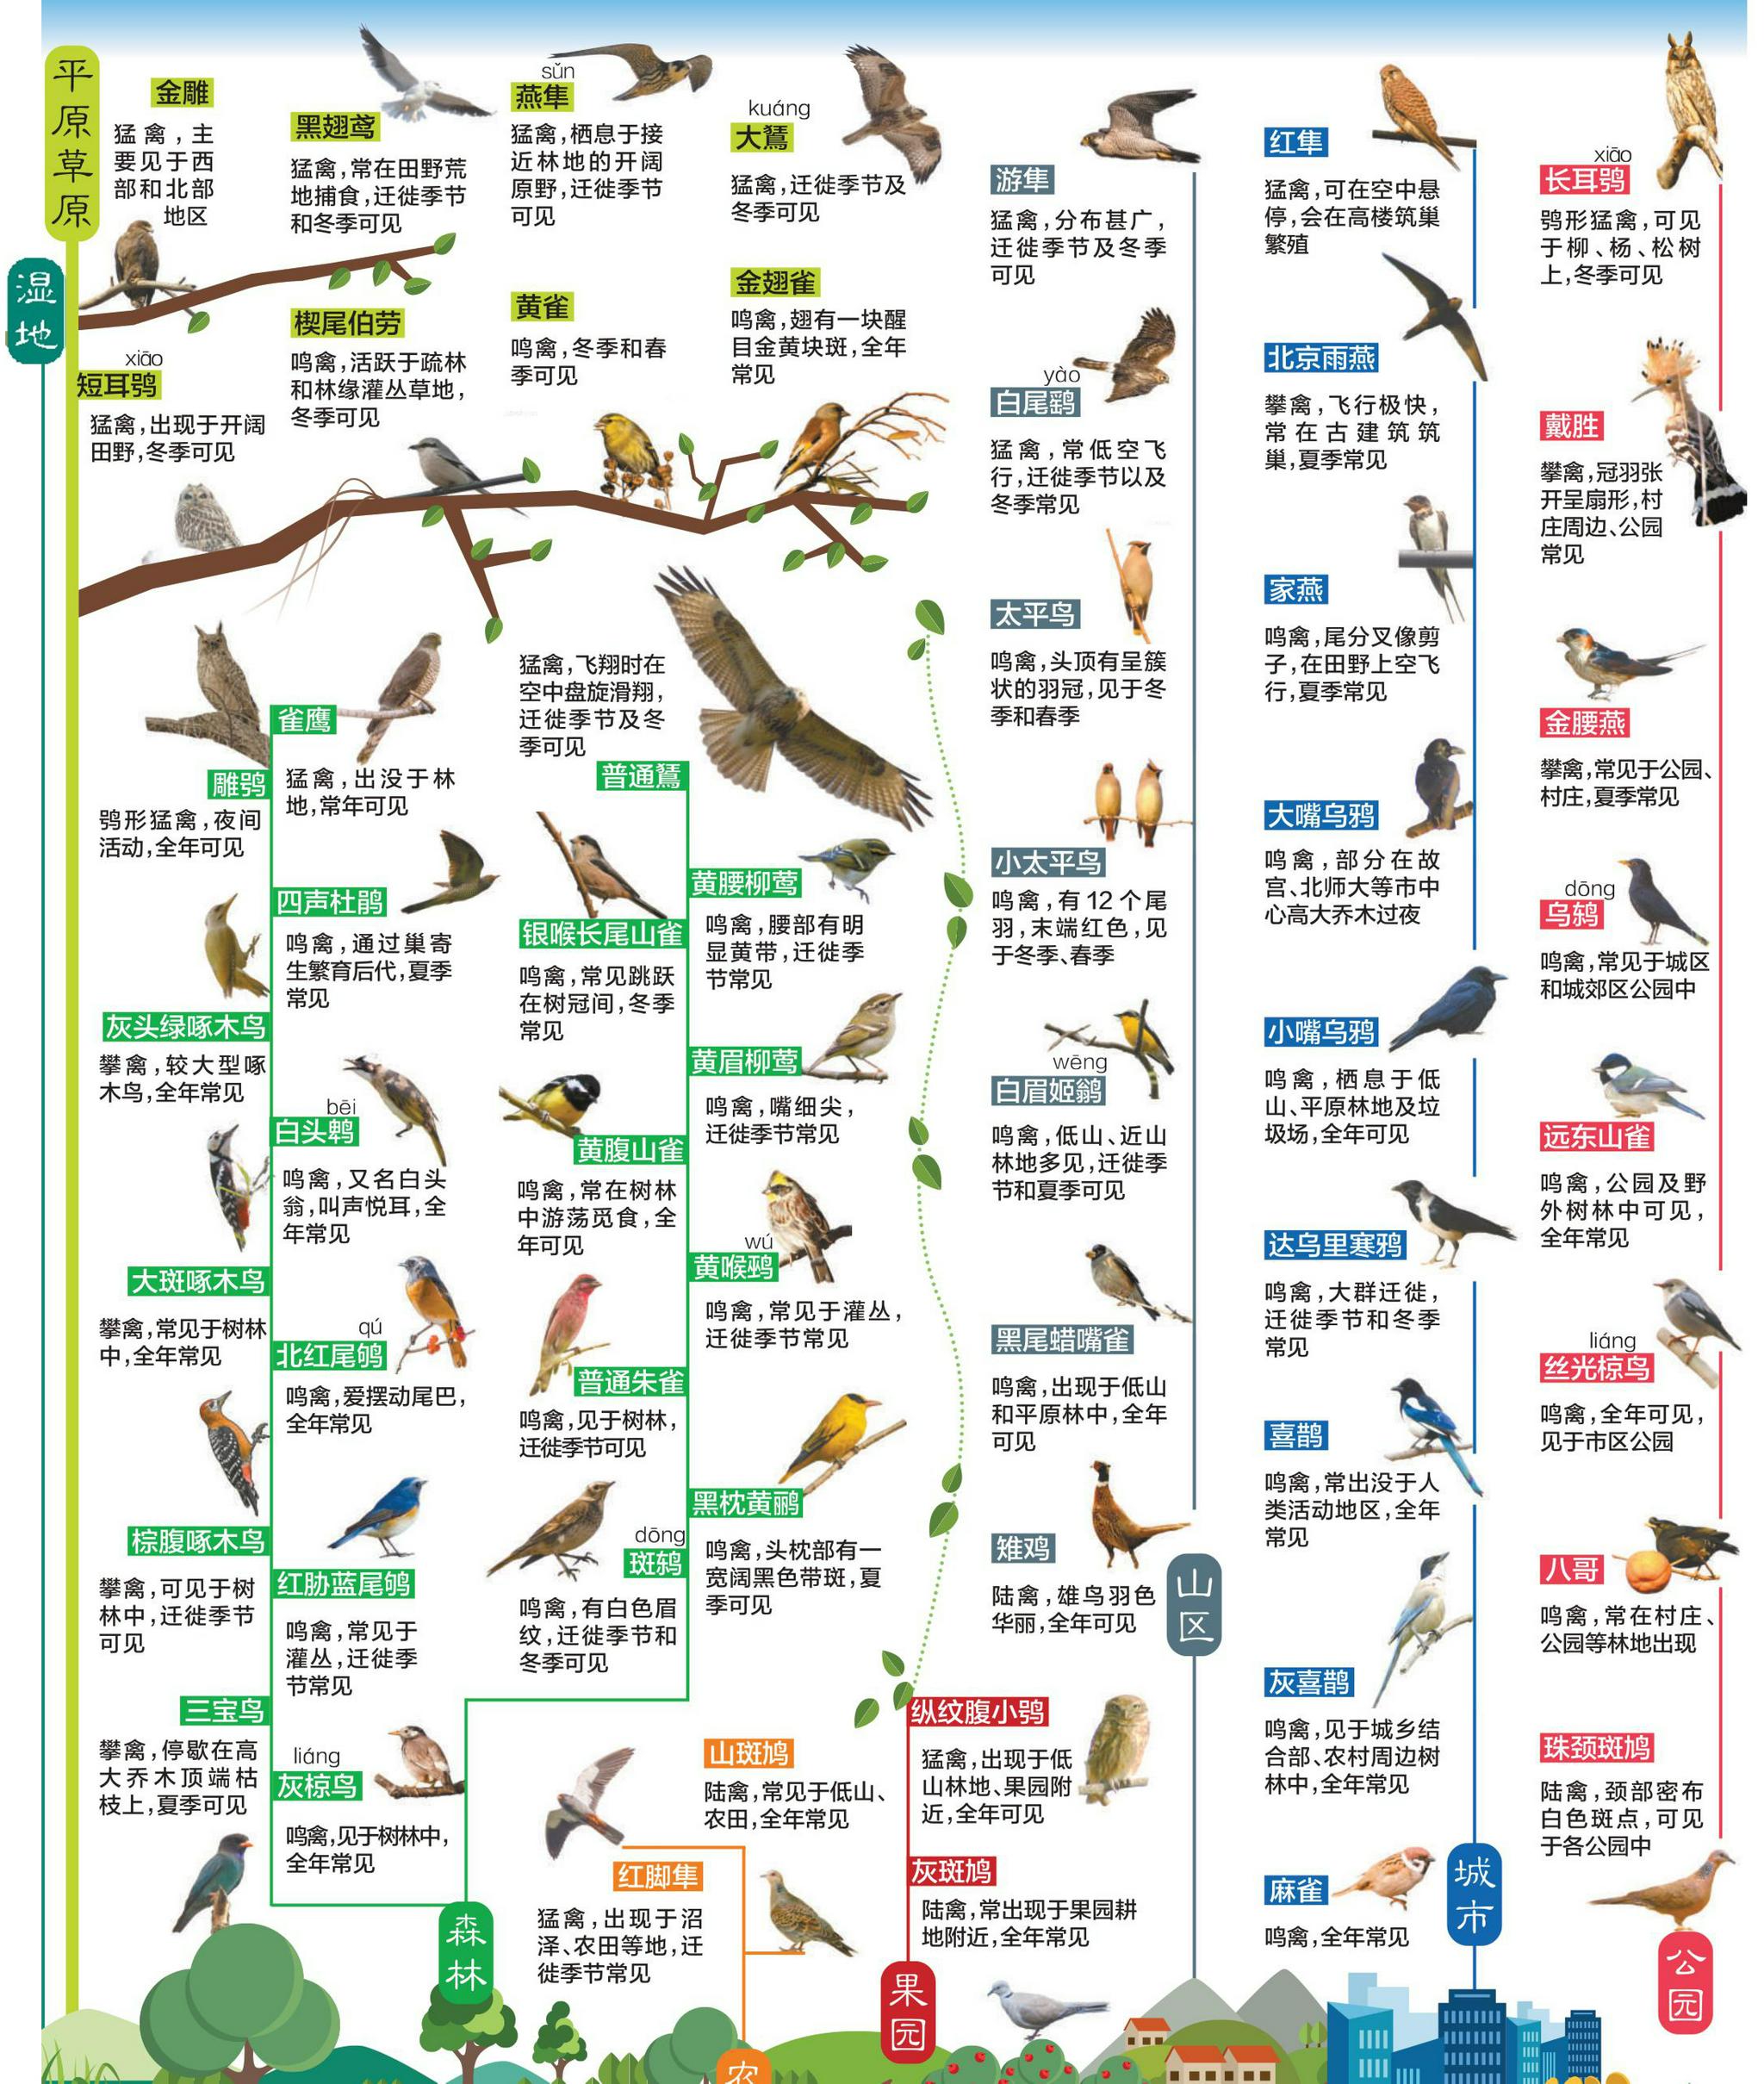 99种鸟的名称图片图片